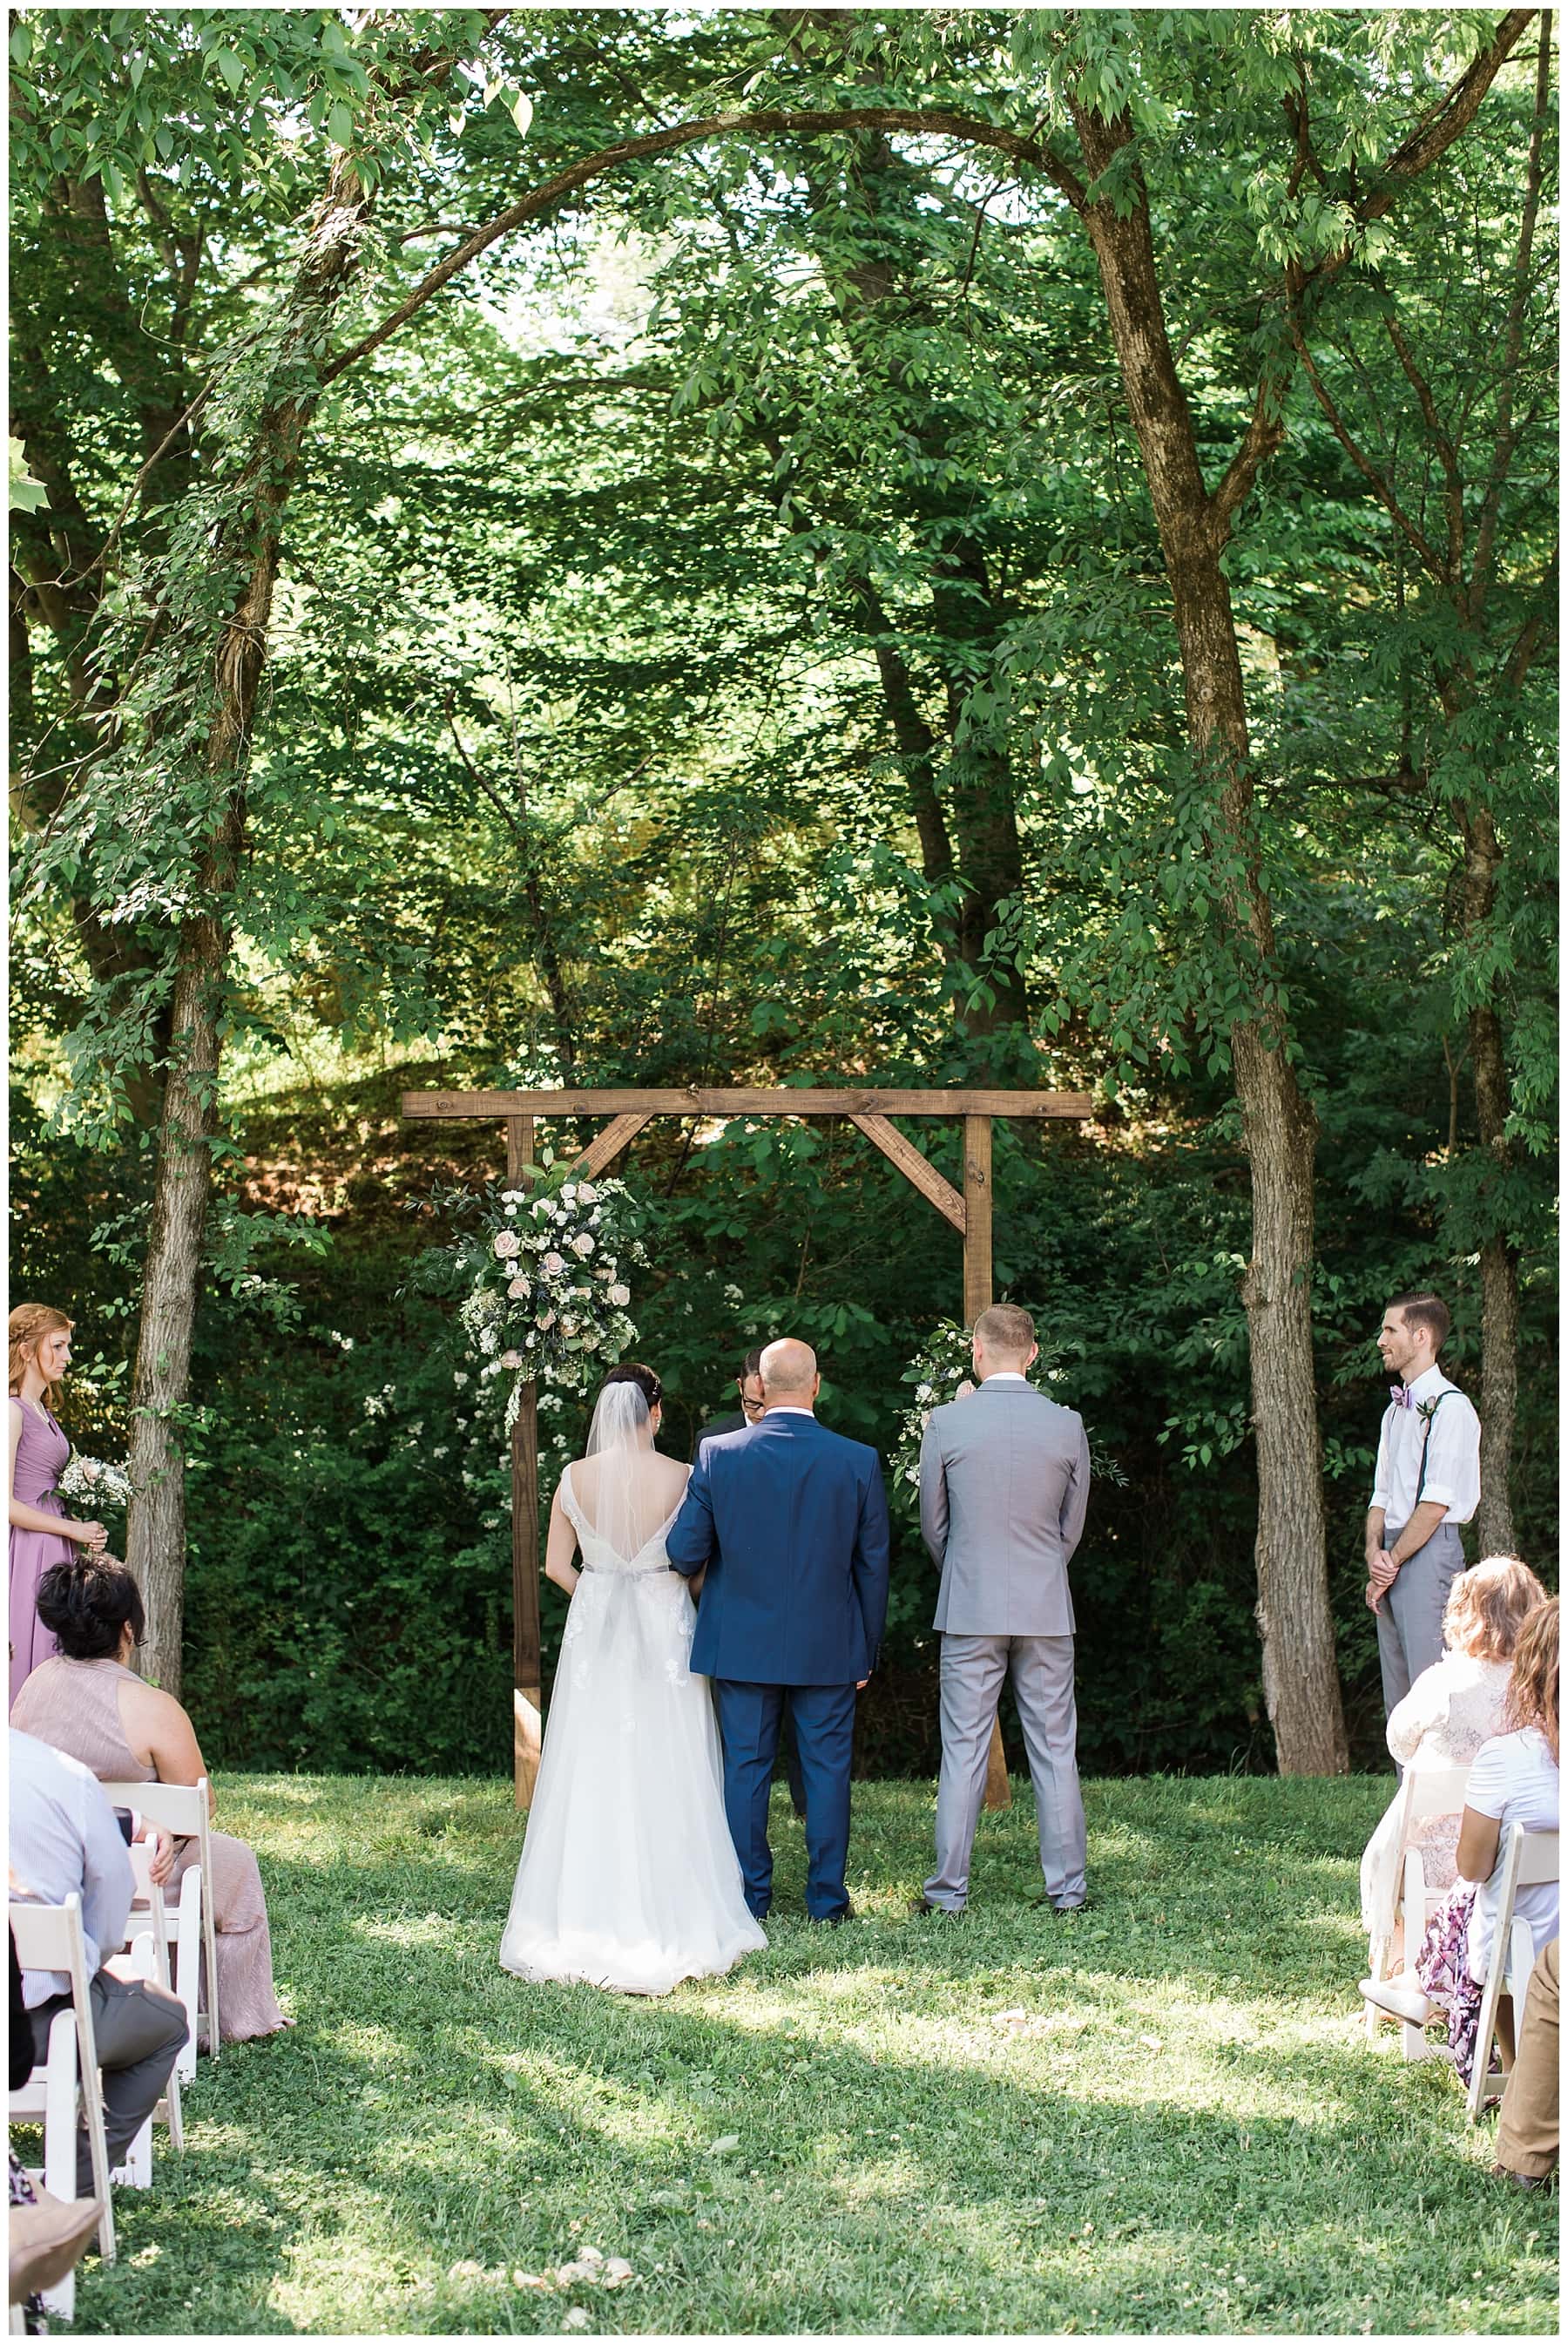 Danielle-Defayette-Photography-Daras-Garden-Knoxville-Wedding_0034.jpg